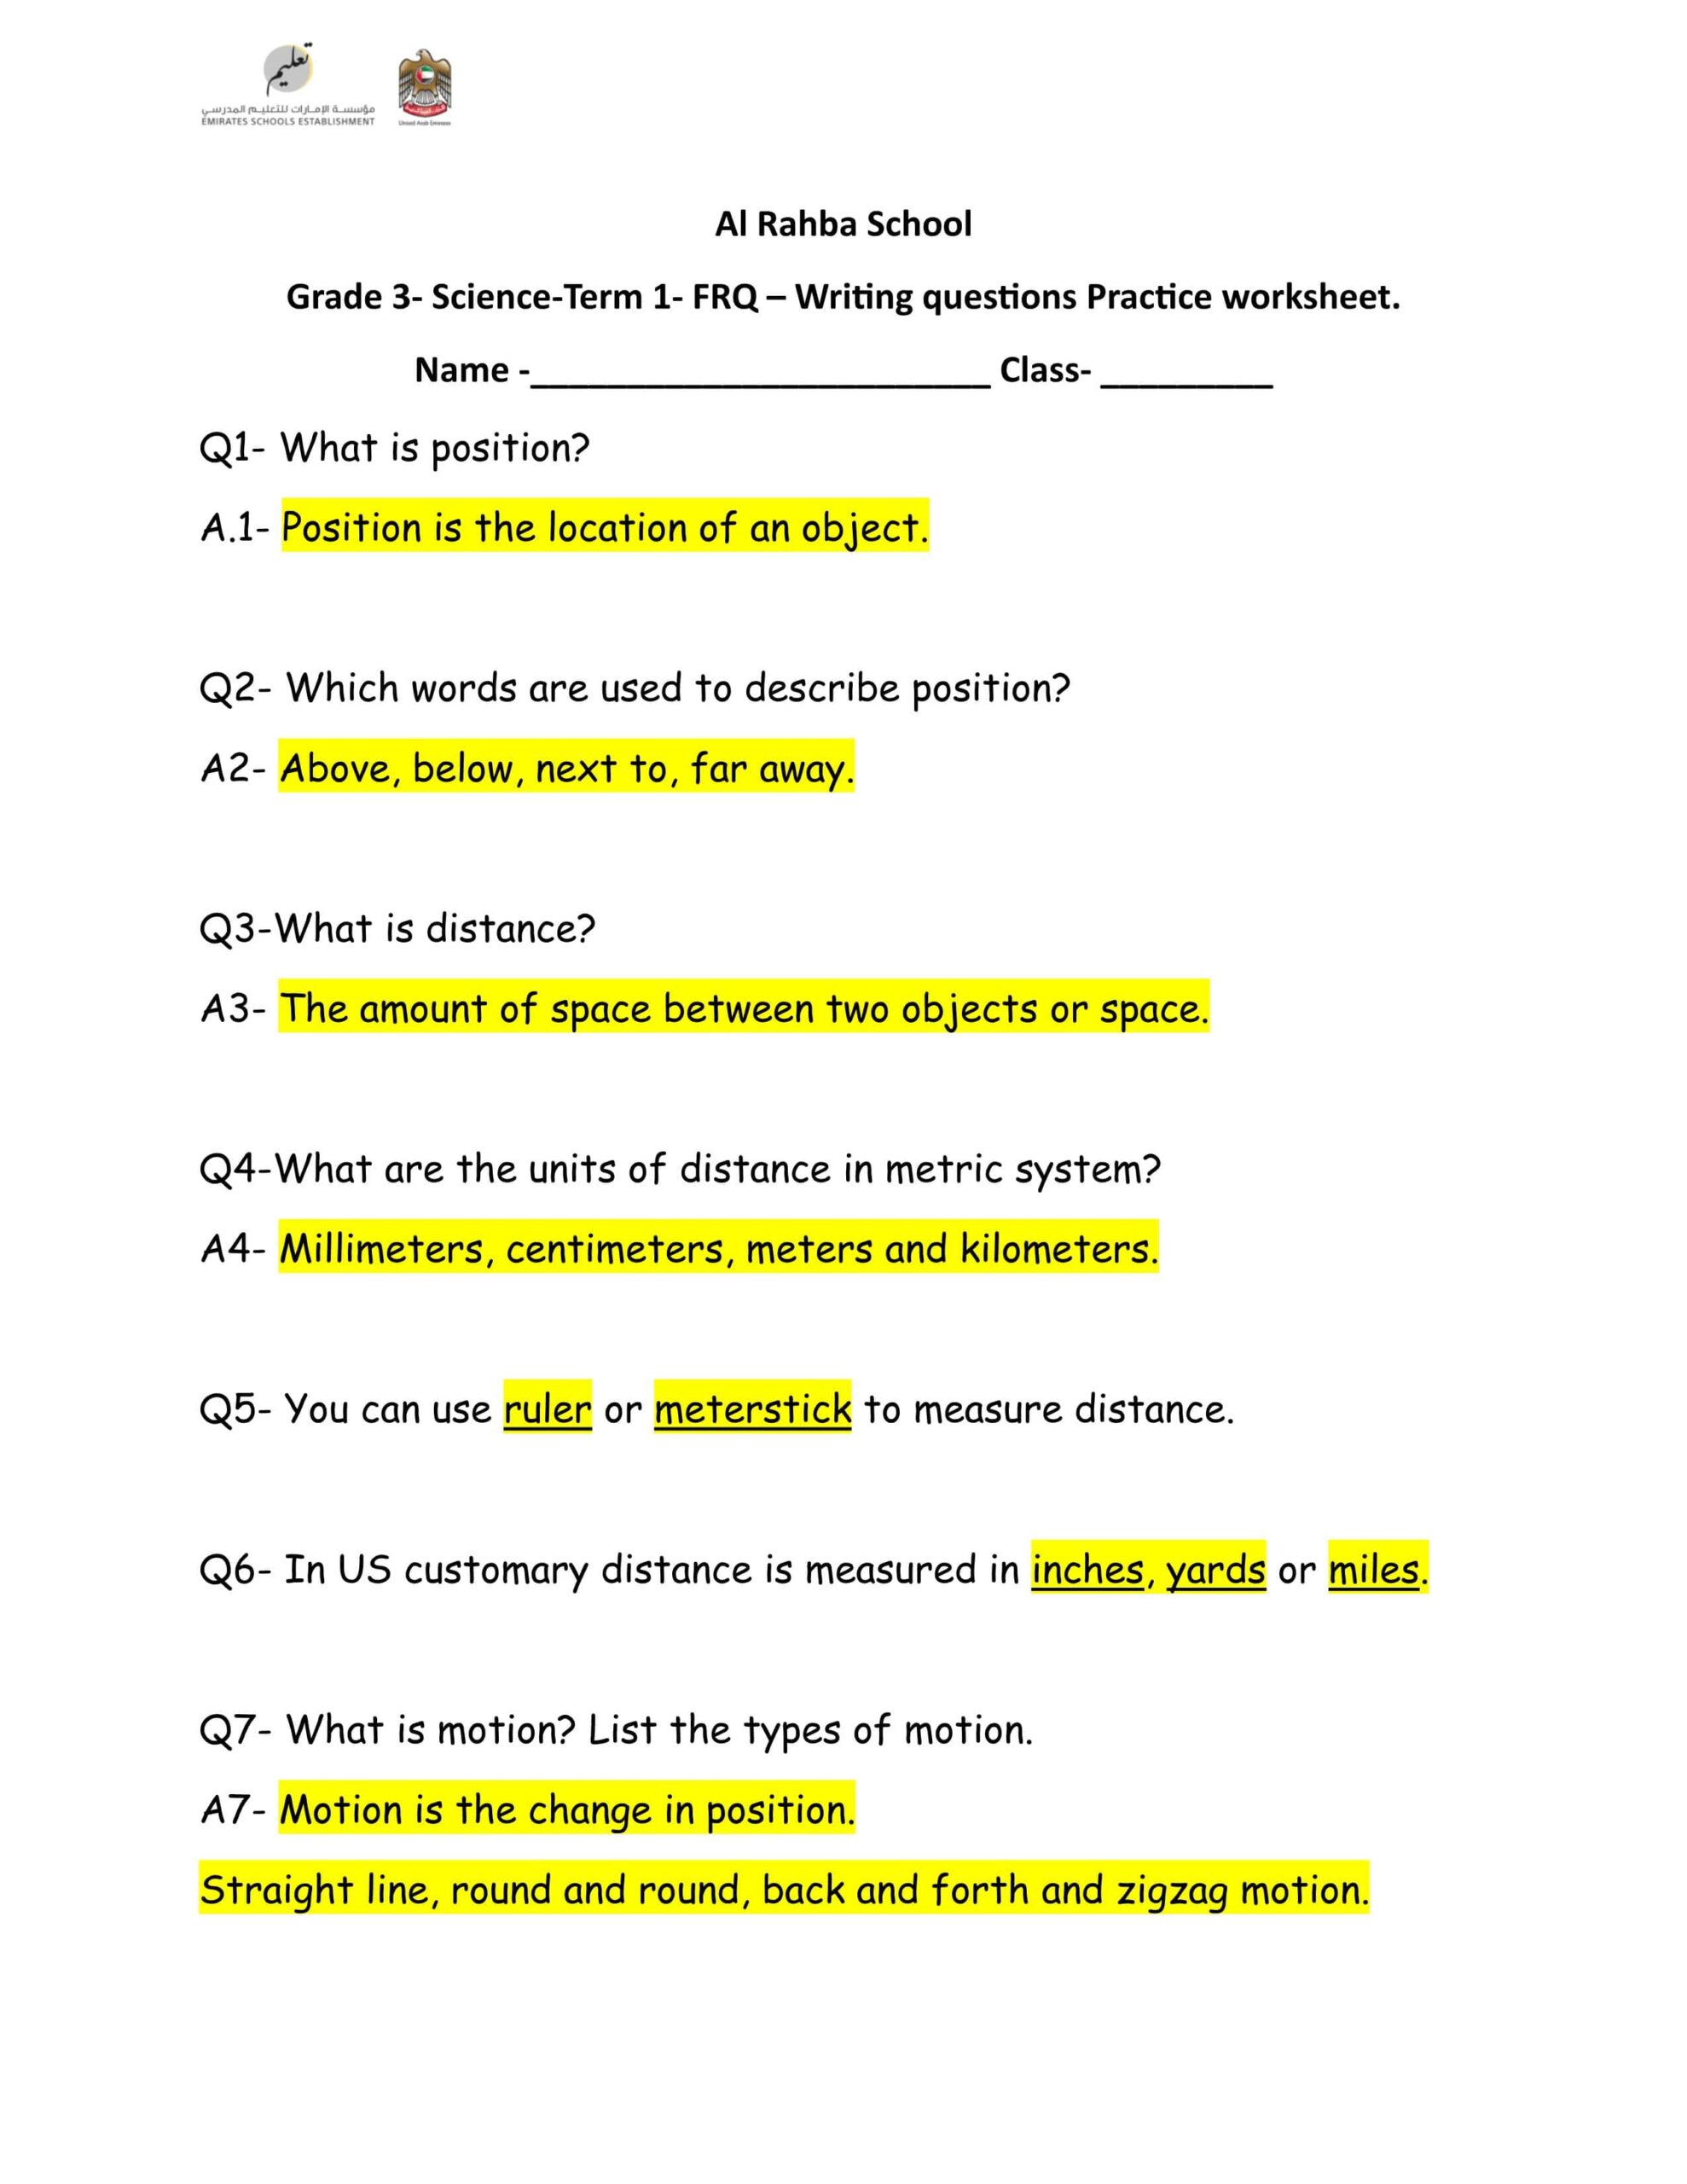 حل ورقة عمل Writing questions Practice worksheet العلوم المتكاملة الصف الثالث